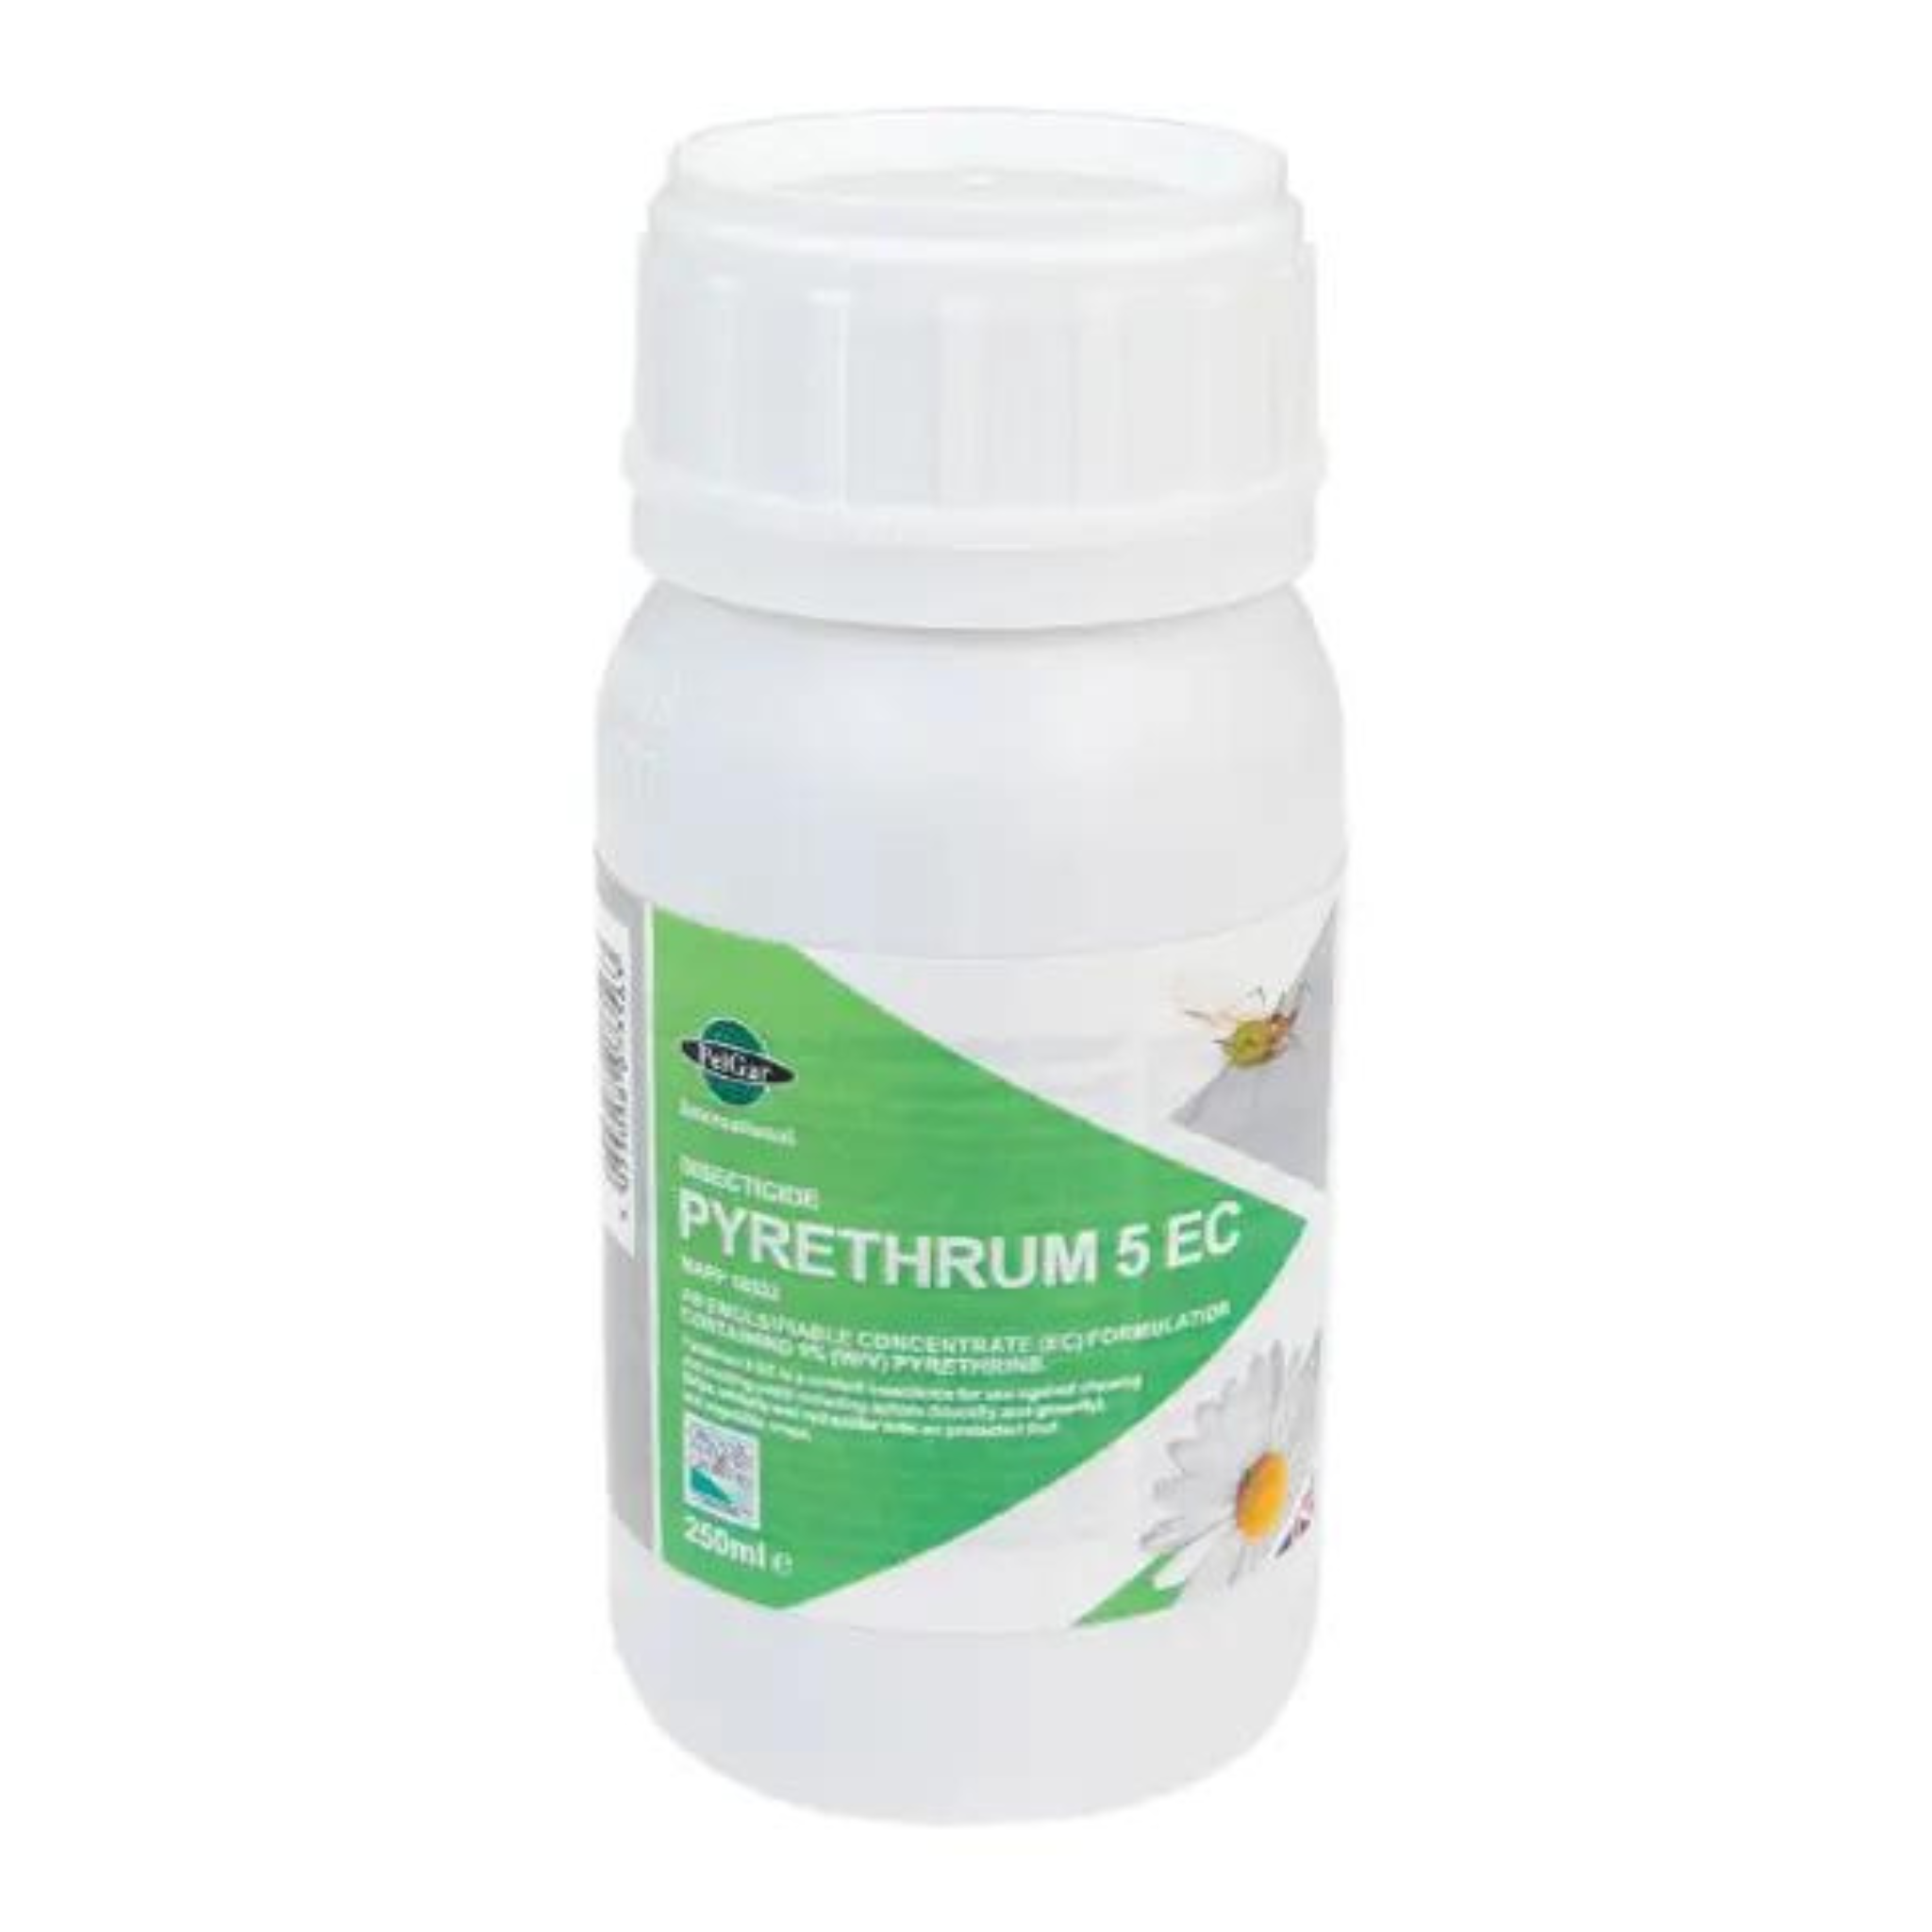 Pyrethrum 5 EC Insecticide